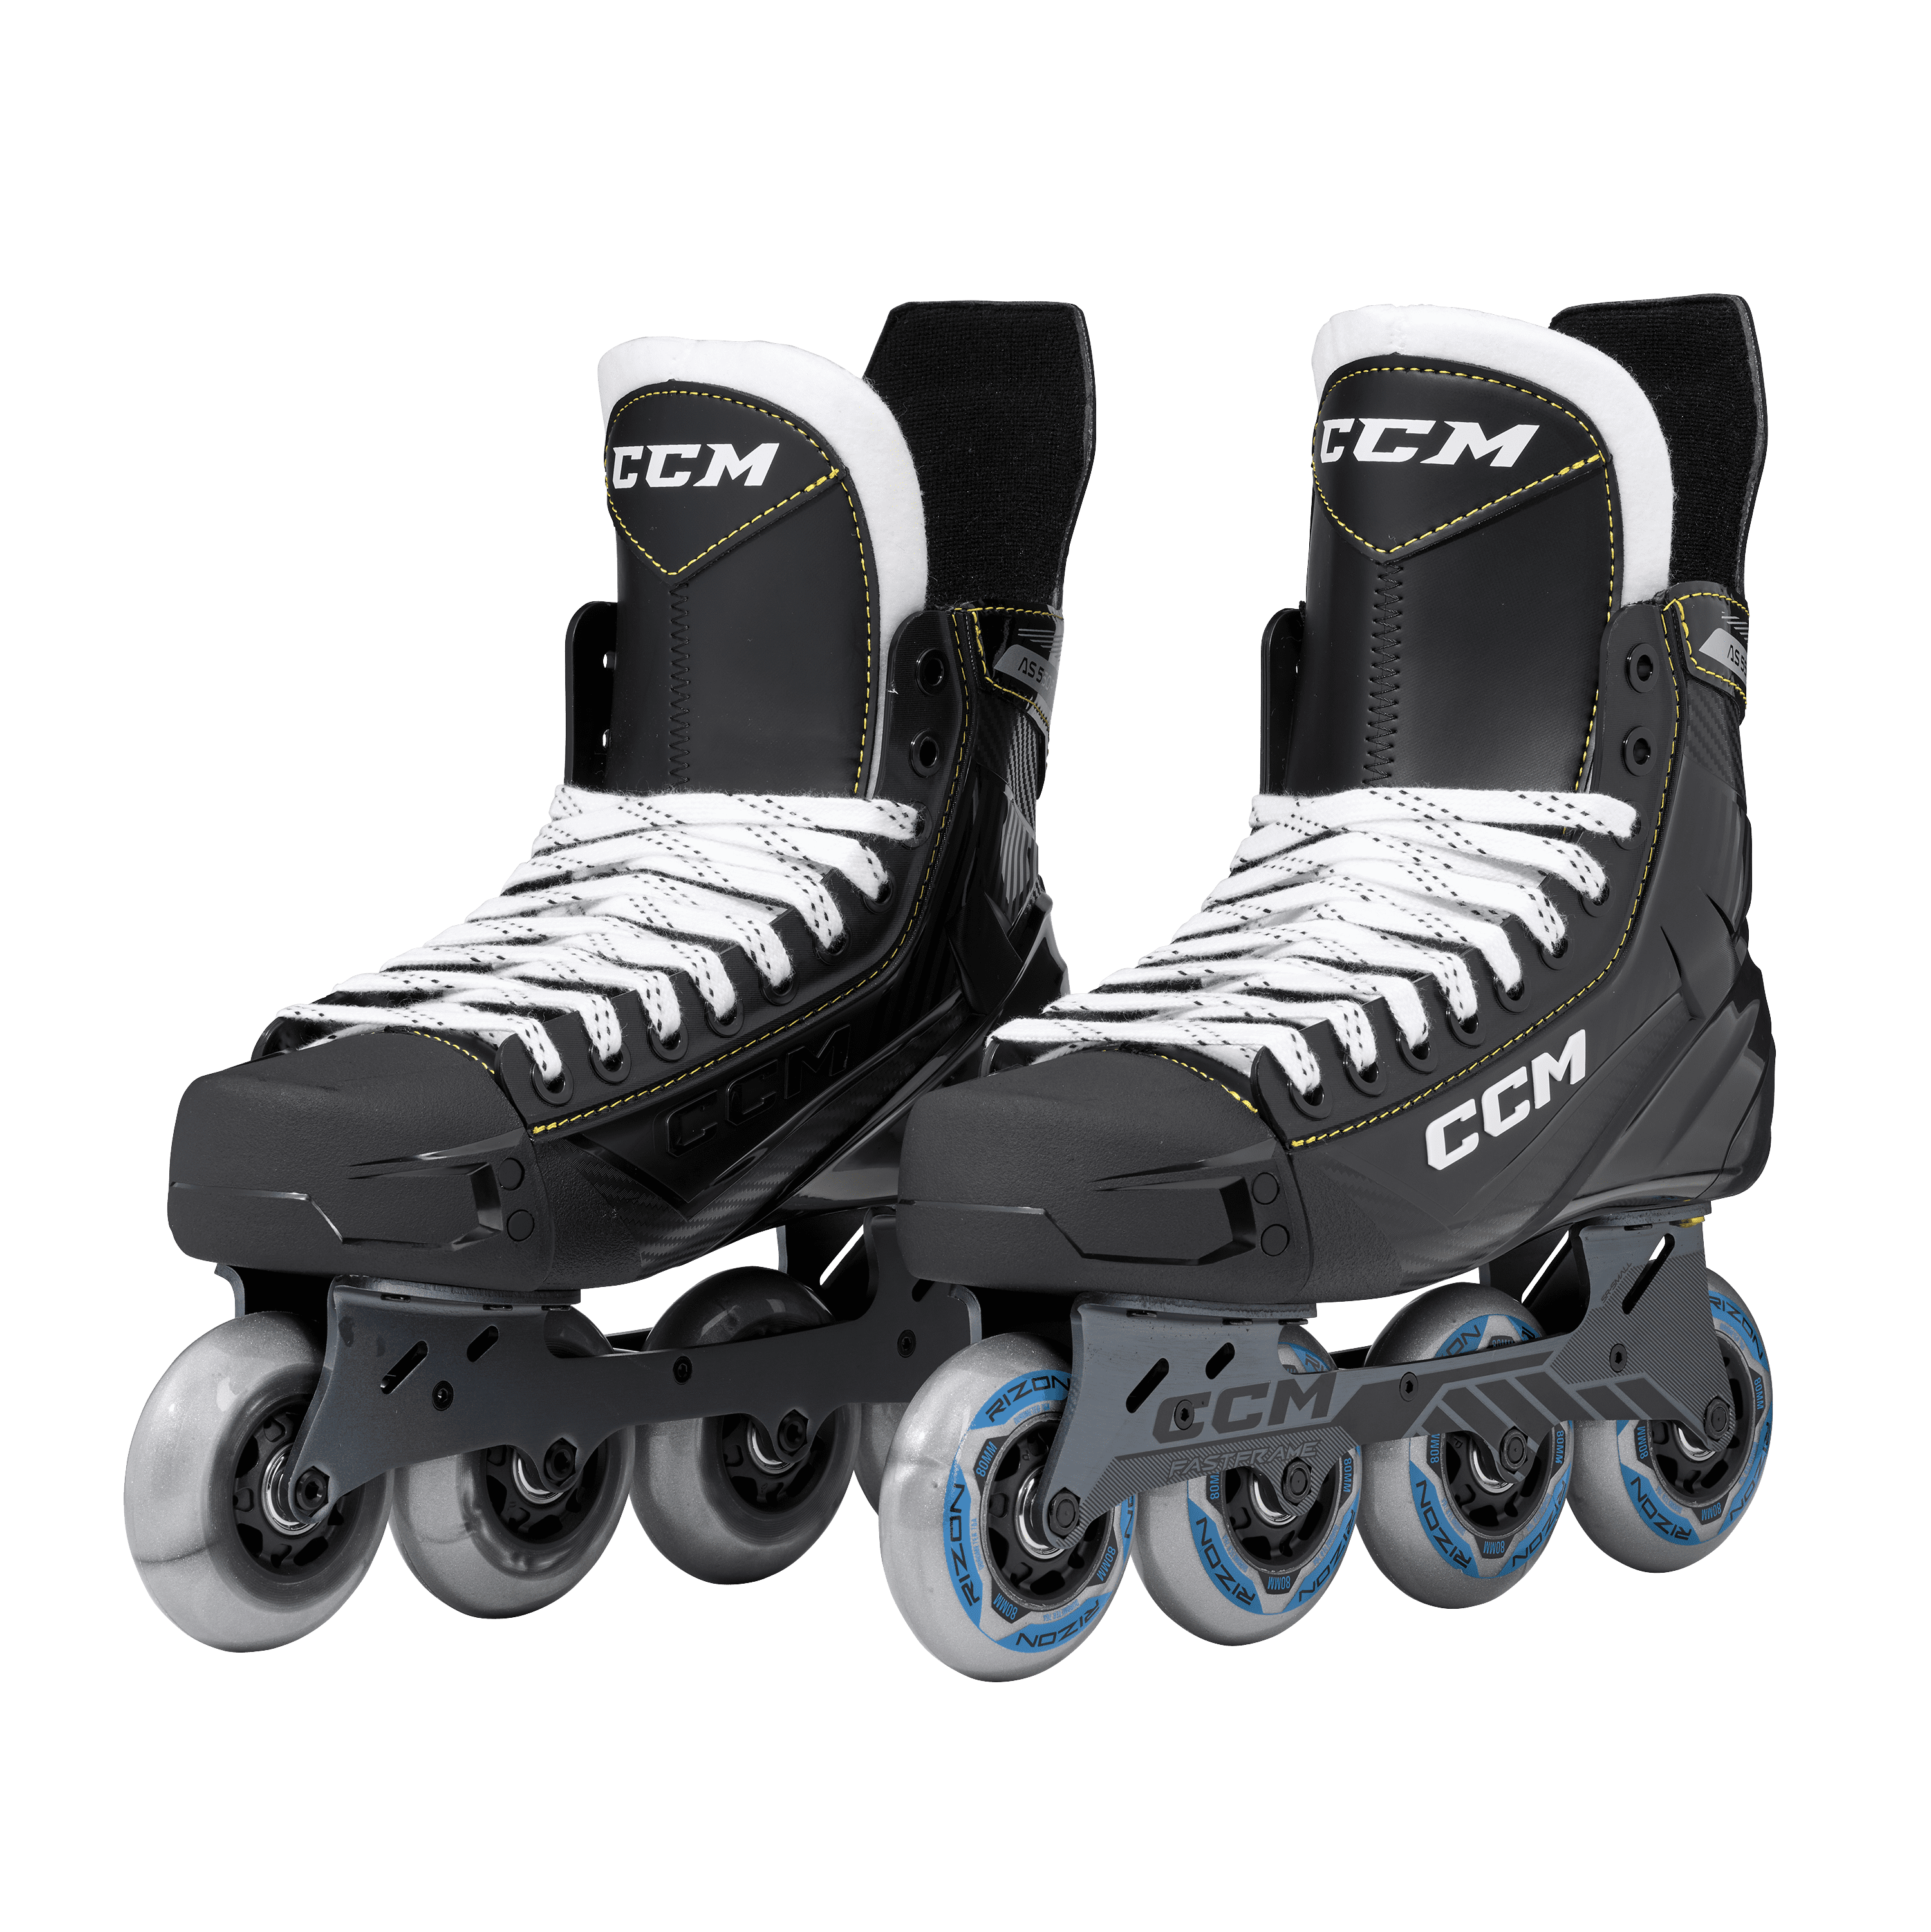 Rollerhockey Skate CCM Tacks AS550 JR 